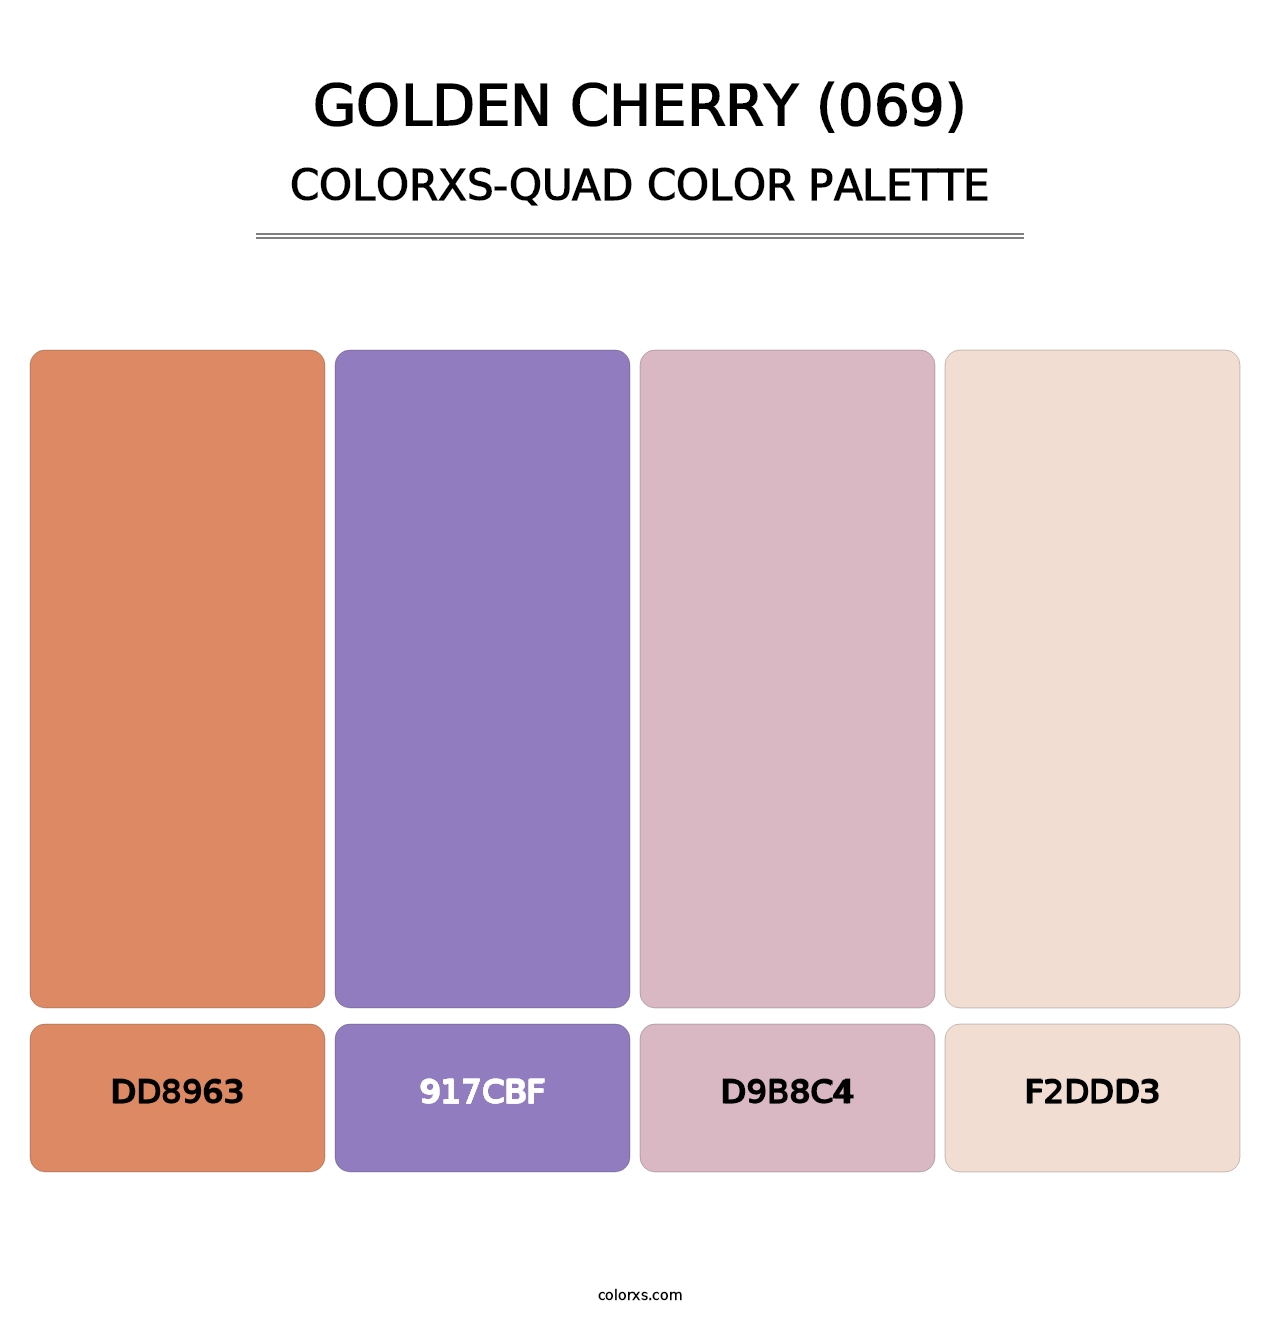 Golden Cherry (069) - Colorxs Quad Palette